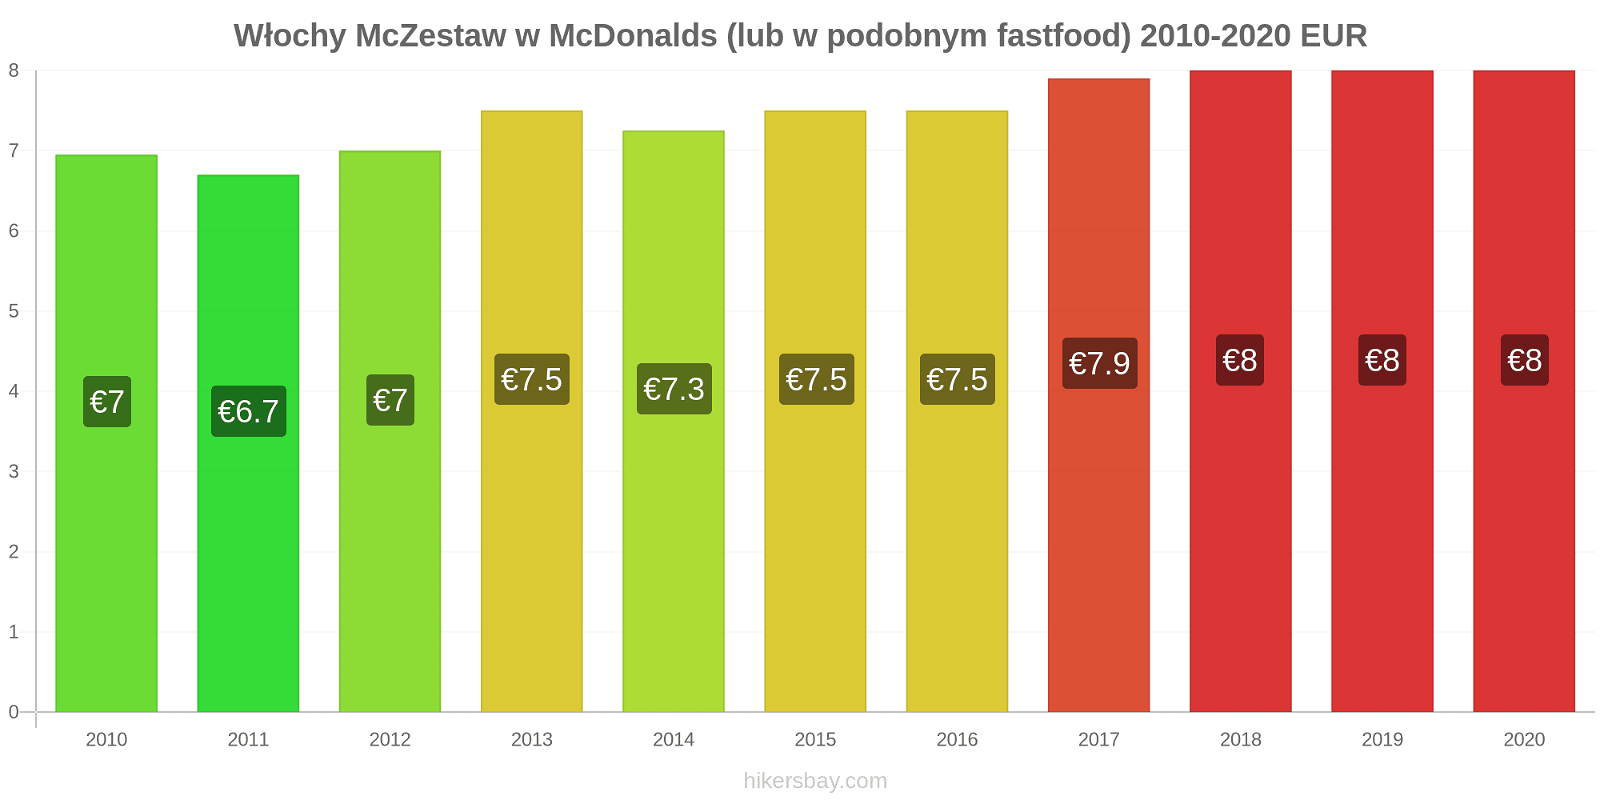 Włochy zmiany cen McZestaw w McDonalds (lub w podobnym fastfood) hikersbay.com